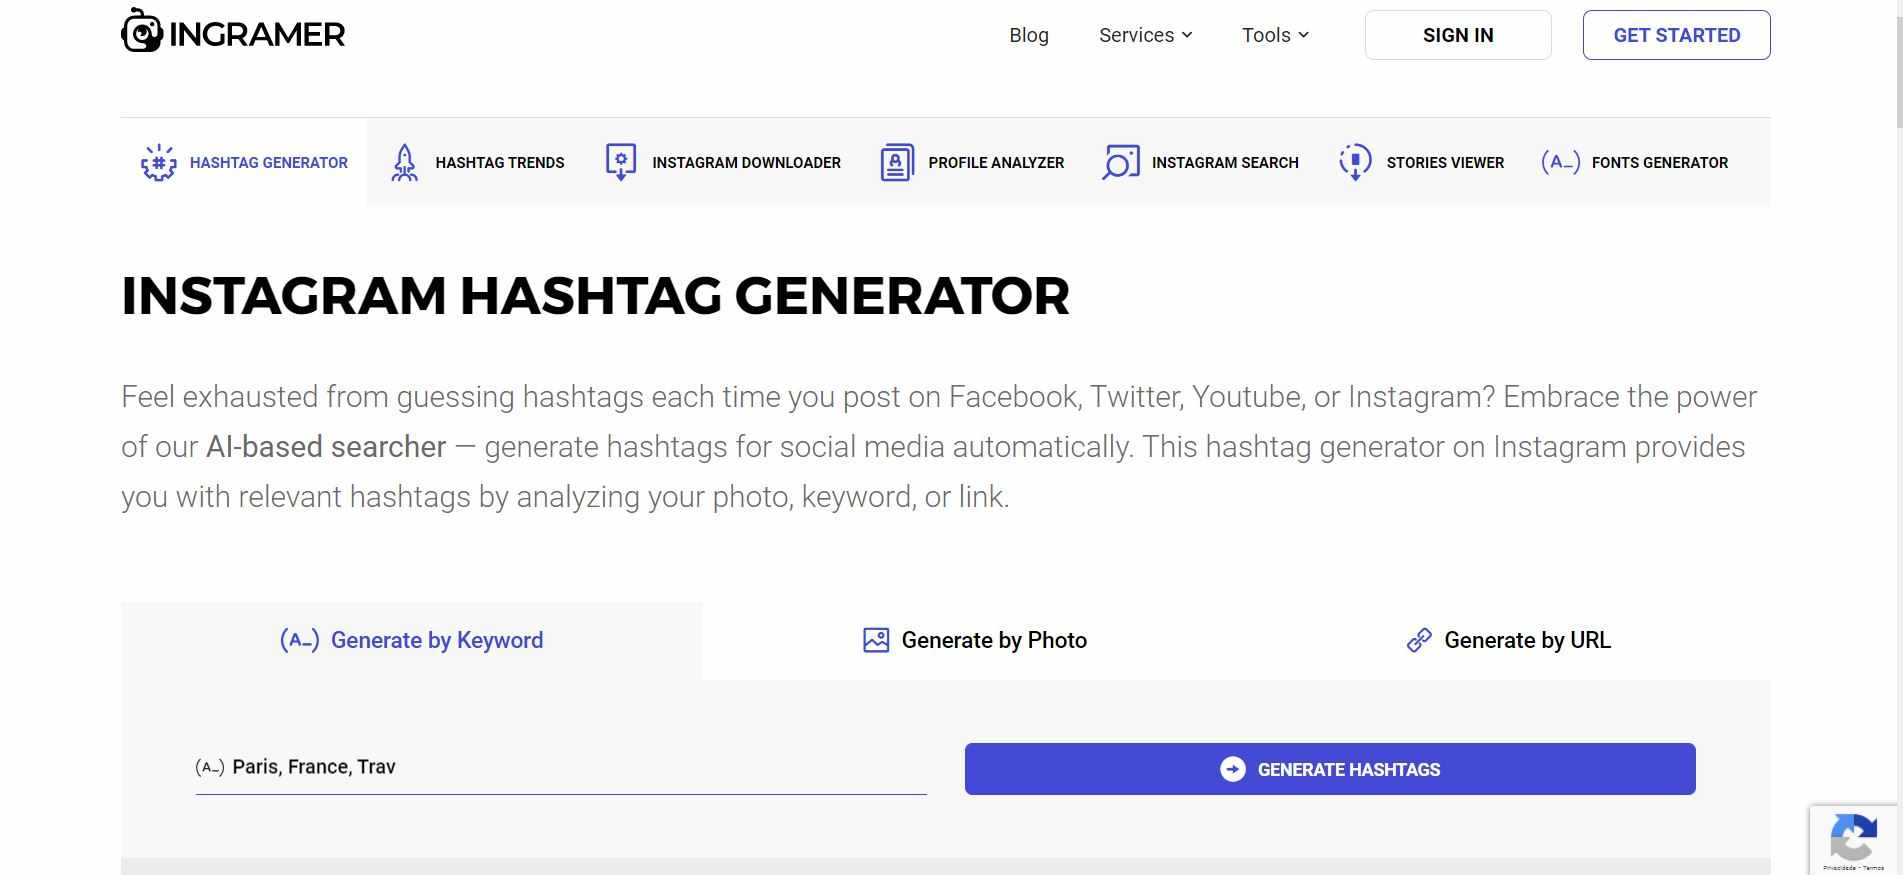 Share-Feijao-com-Arroz-61-10-ferramentas-para-gerar-hashtag-para-o-instagram-site-05-min-1.jpg